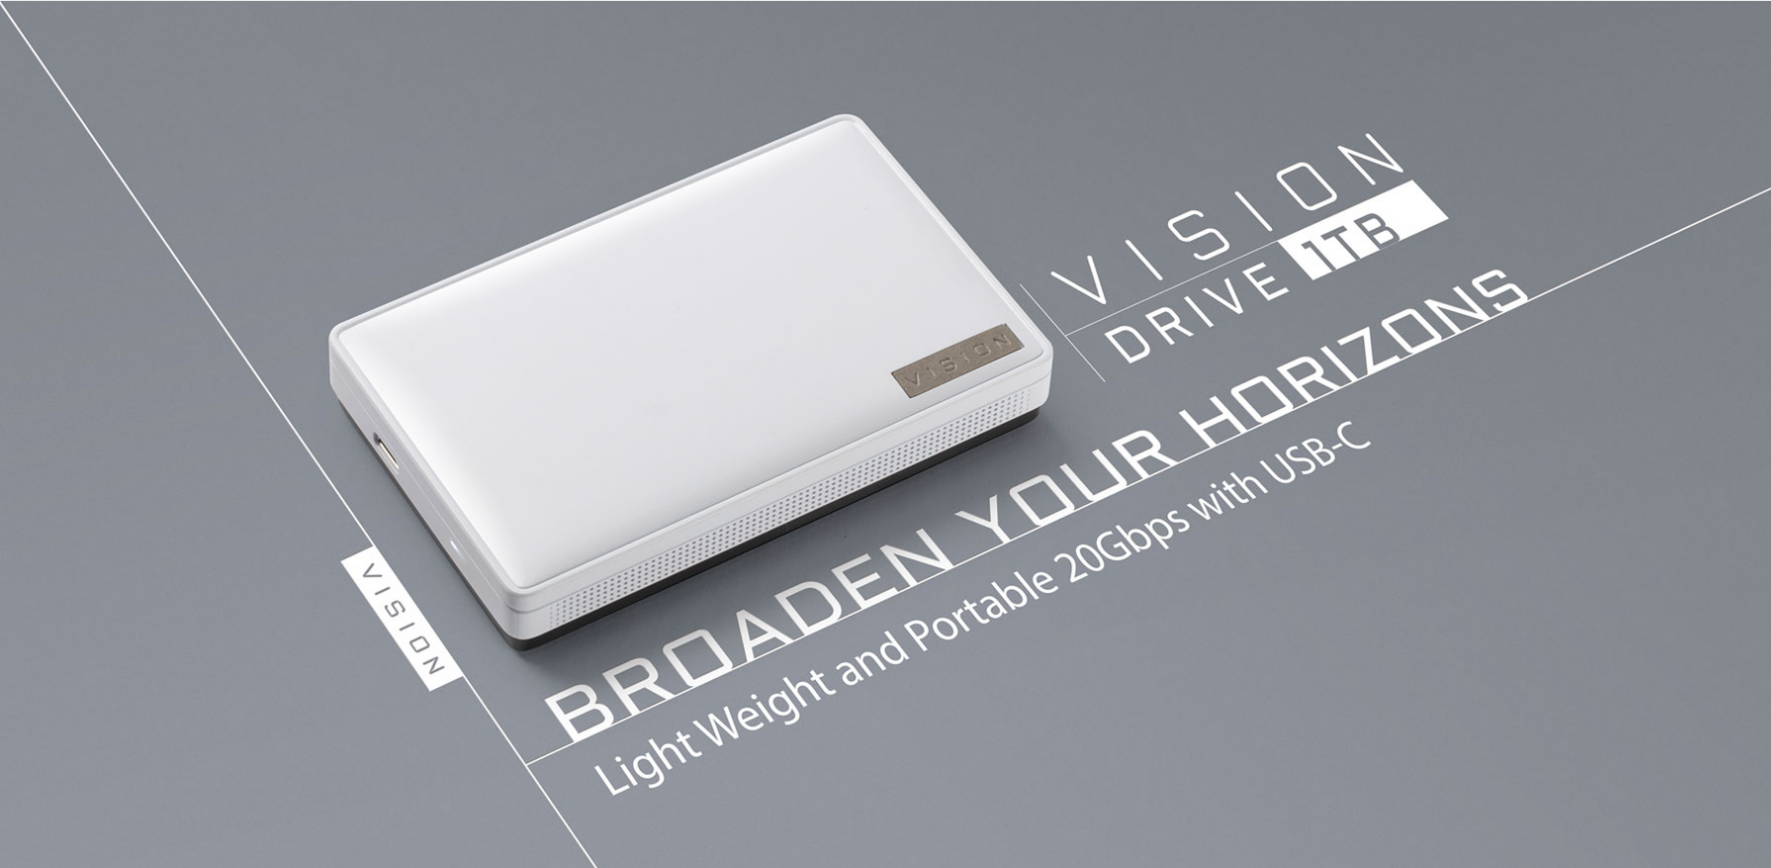 GIGABYTE Vision Drive SSD 1TB Diperkenalkan – Storan Dengan Kelajuan 2GB/s Pada Harga RM850